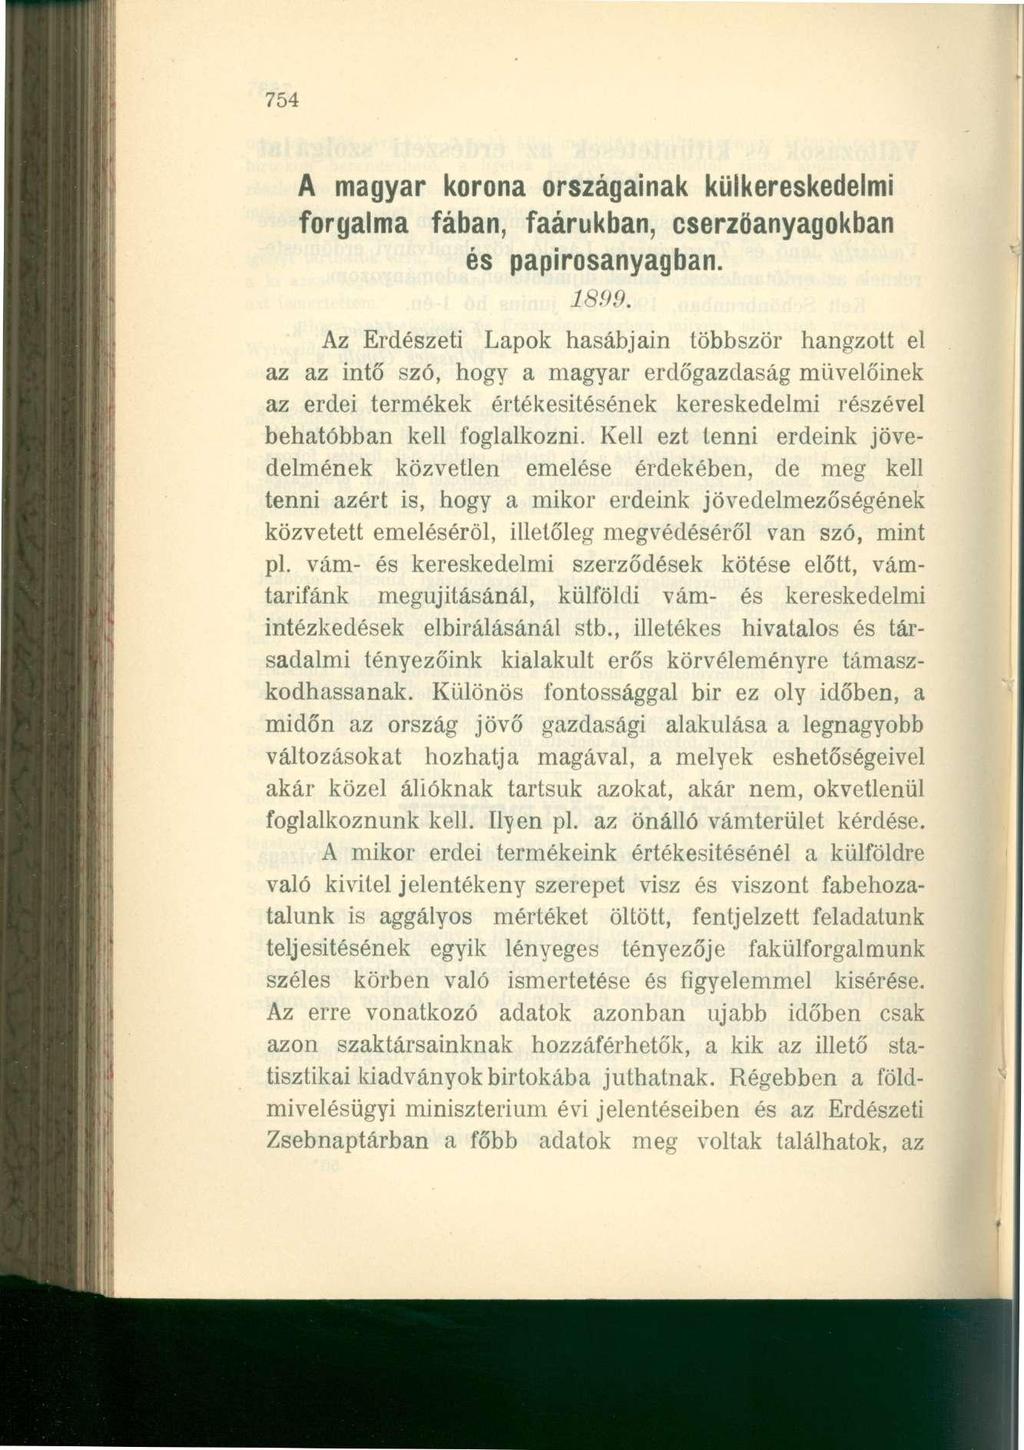 754 A magyar korona országainak külkereskedelmi forgalma fában, faárukban, cserzöanyagokban és papirosanyagban. 1899.